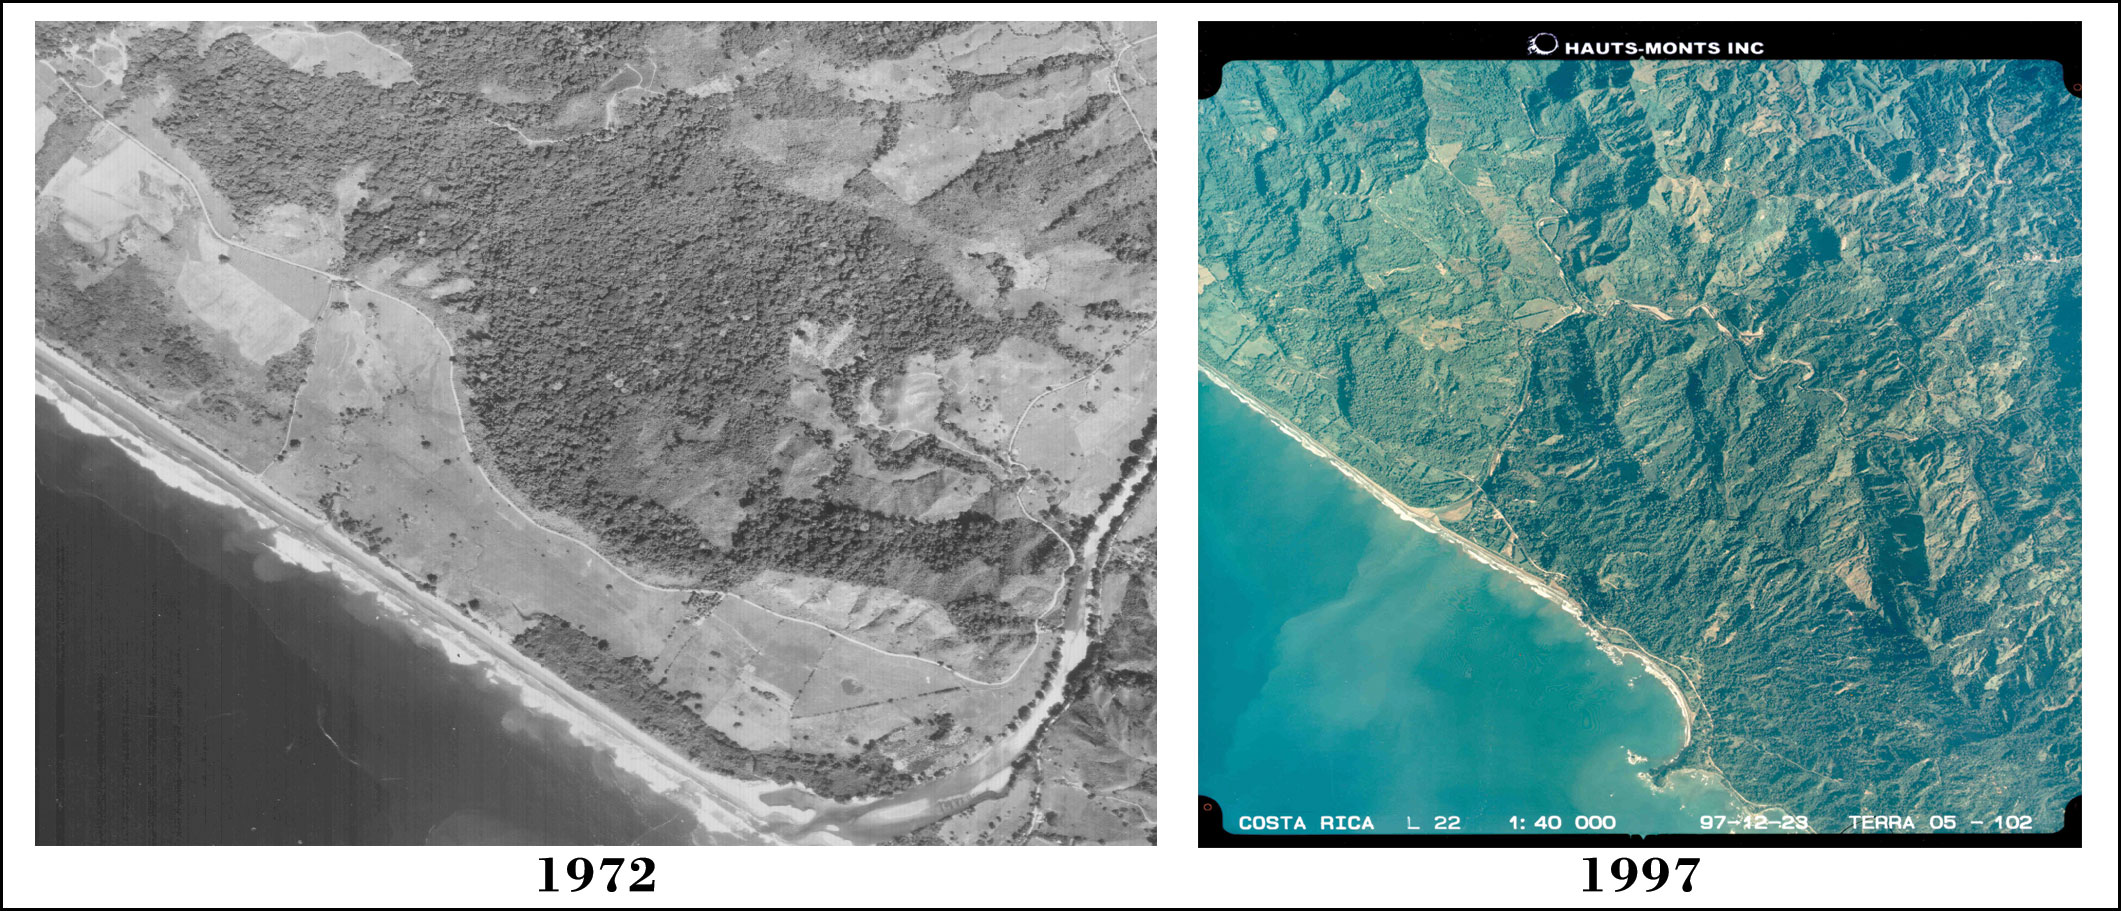 Aerials photos comparing 1972 and 1997